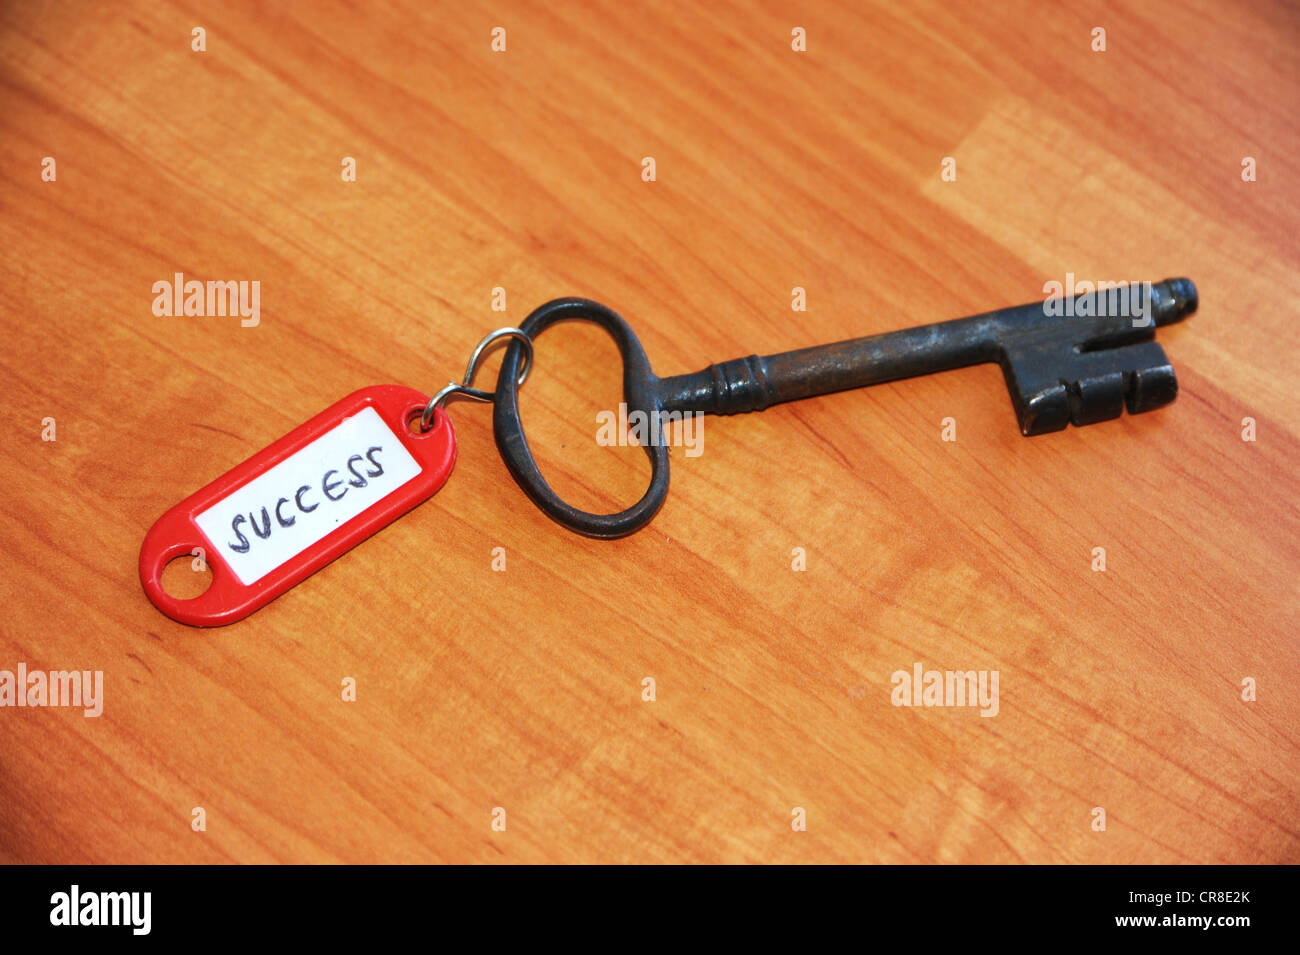 Anello chiave con il segno 'success', immagine simbolica per "la chiave del successo" Foto Stock